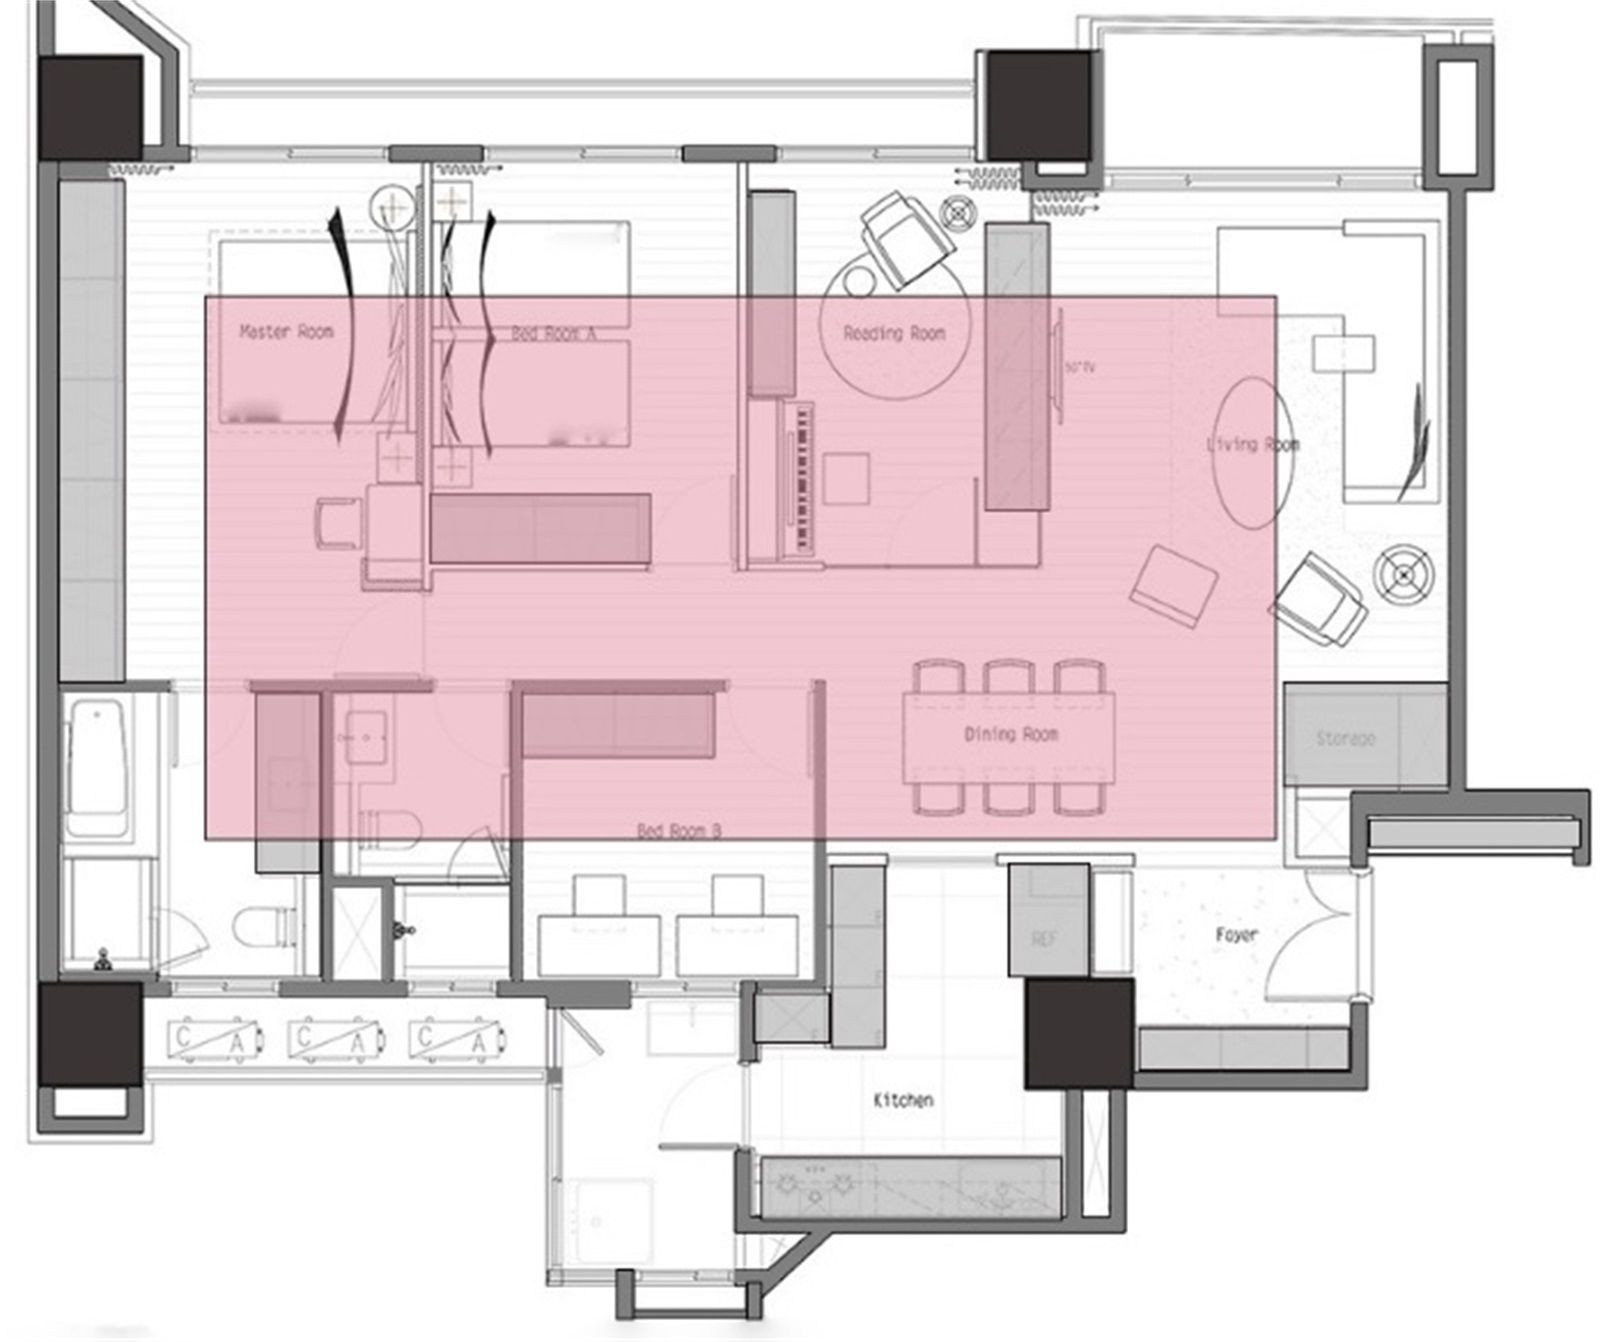 130现代三房装修效果图,有质感的都市生活装修案例效果图-美广网